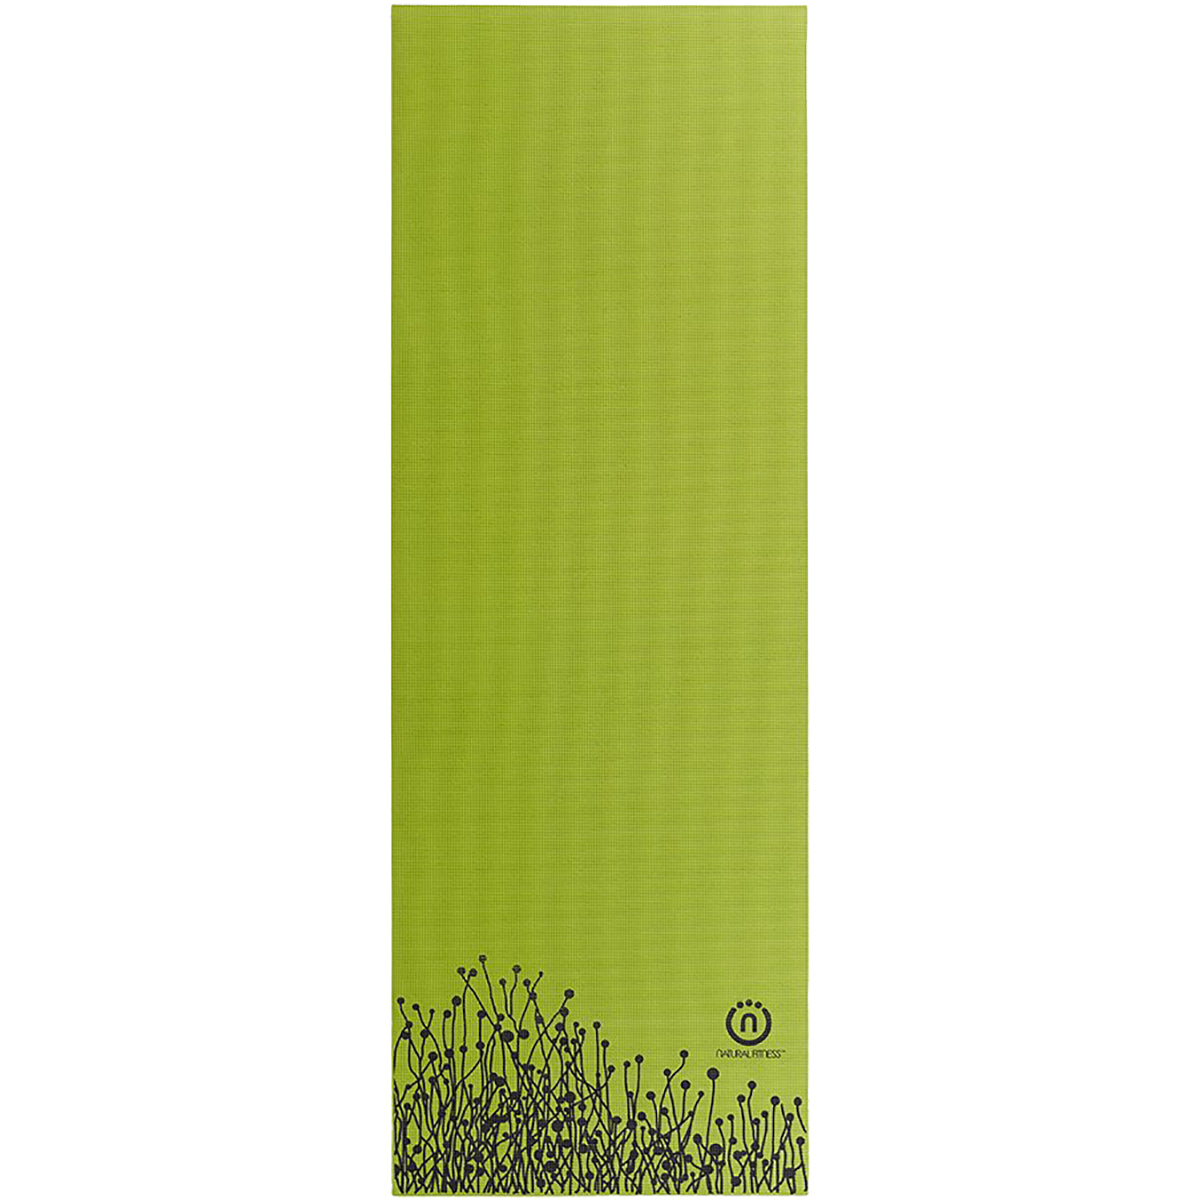 Lifeline USA Natural Fitness Warrior 4mm Eco-Smart Yoga Mat Lifeline USA